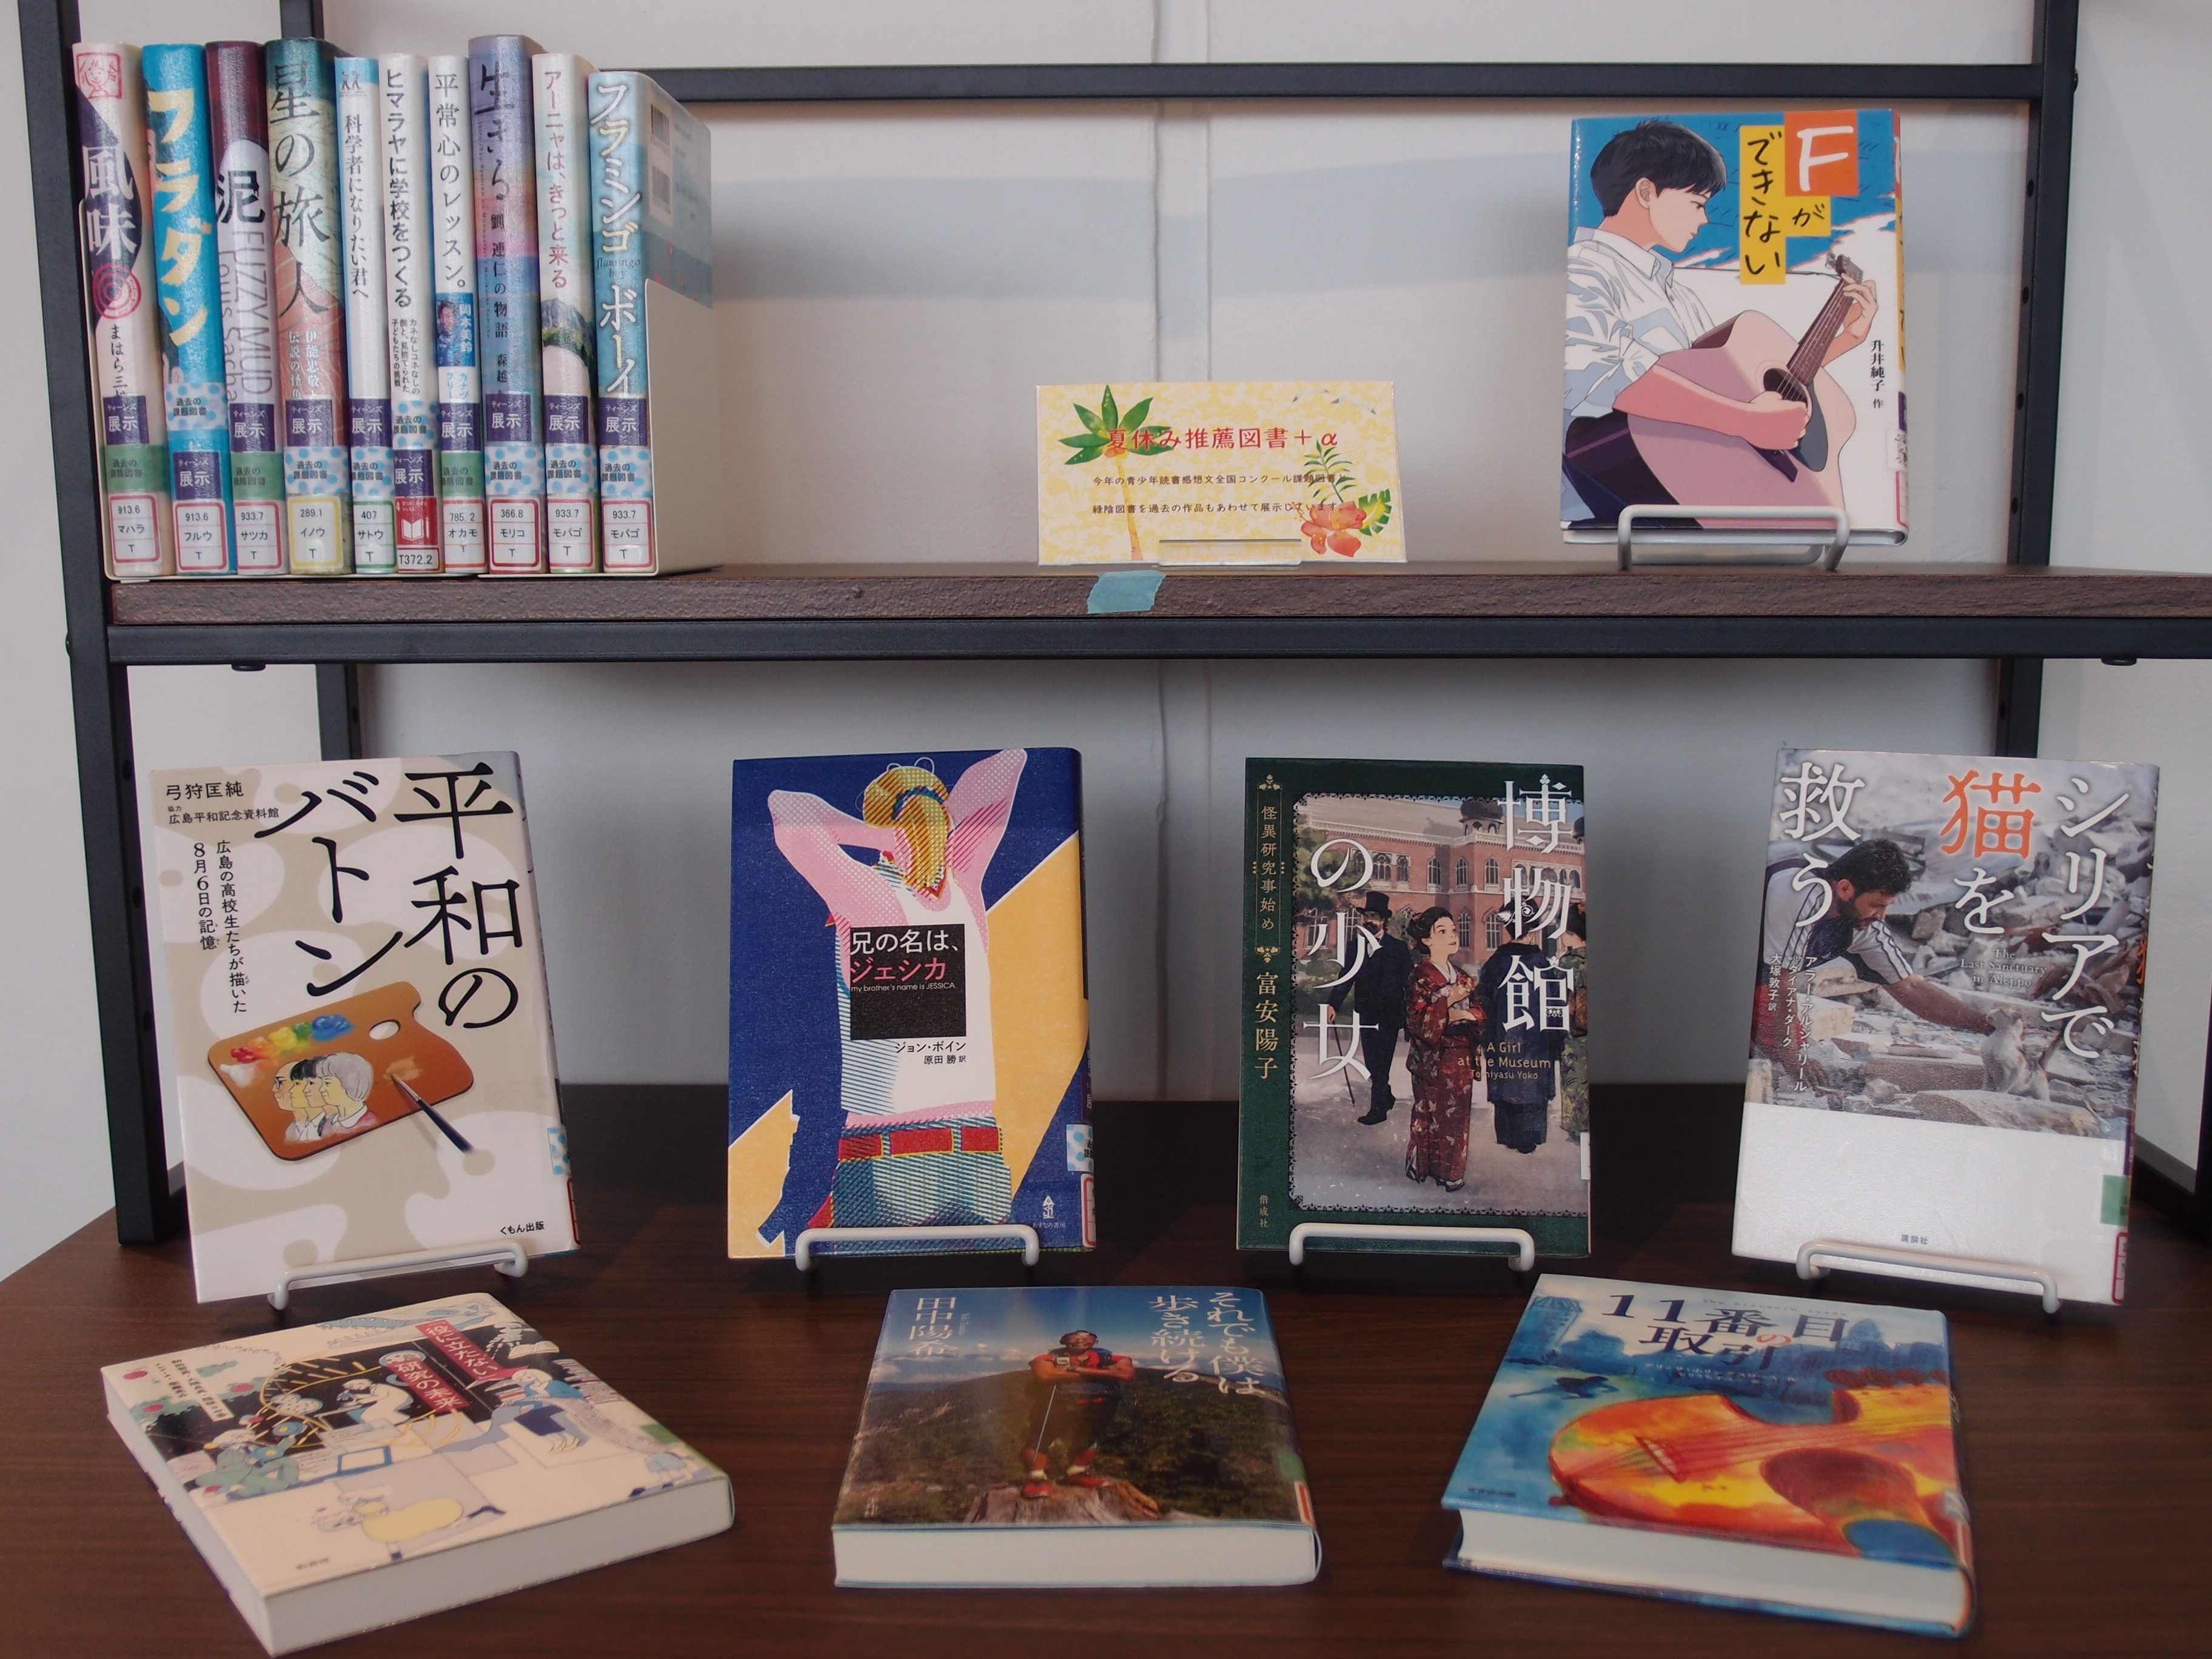 ティーンズ展示コーナーの写真。青少年読書感想文全国コンクールの課題図書と緑陰図書を展示している。